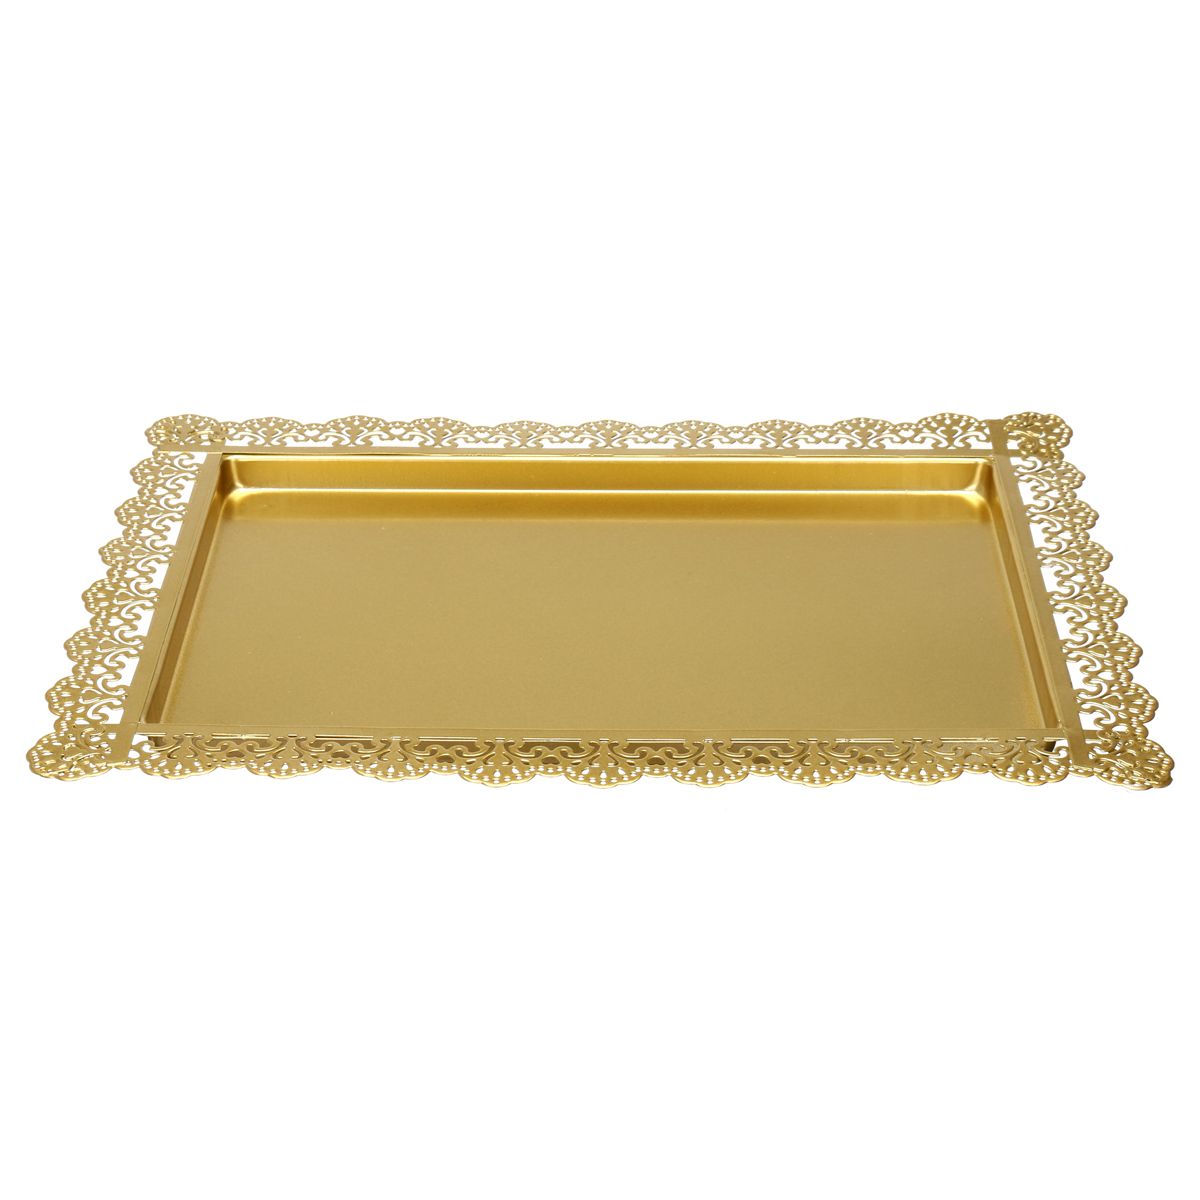 5PCS-Gold-white-Cake-Stand-Set-Round-Metal-Crystal-Cupcake-Dessert-Display-Pedestal-Wedding-Party-Di-1561557